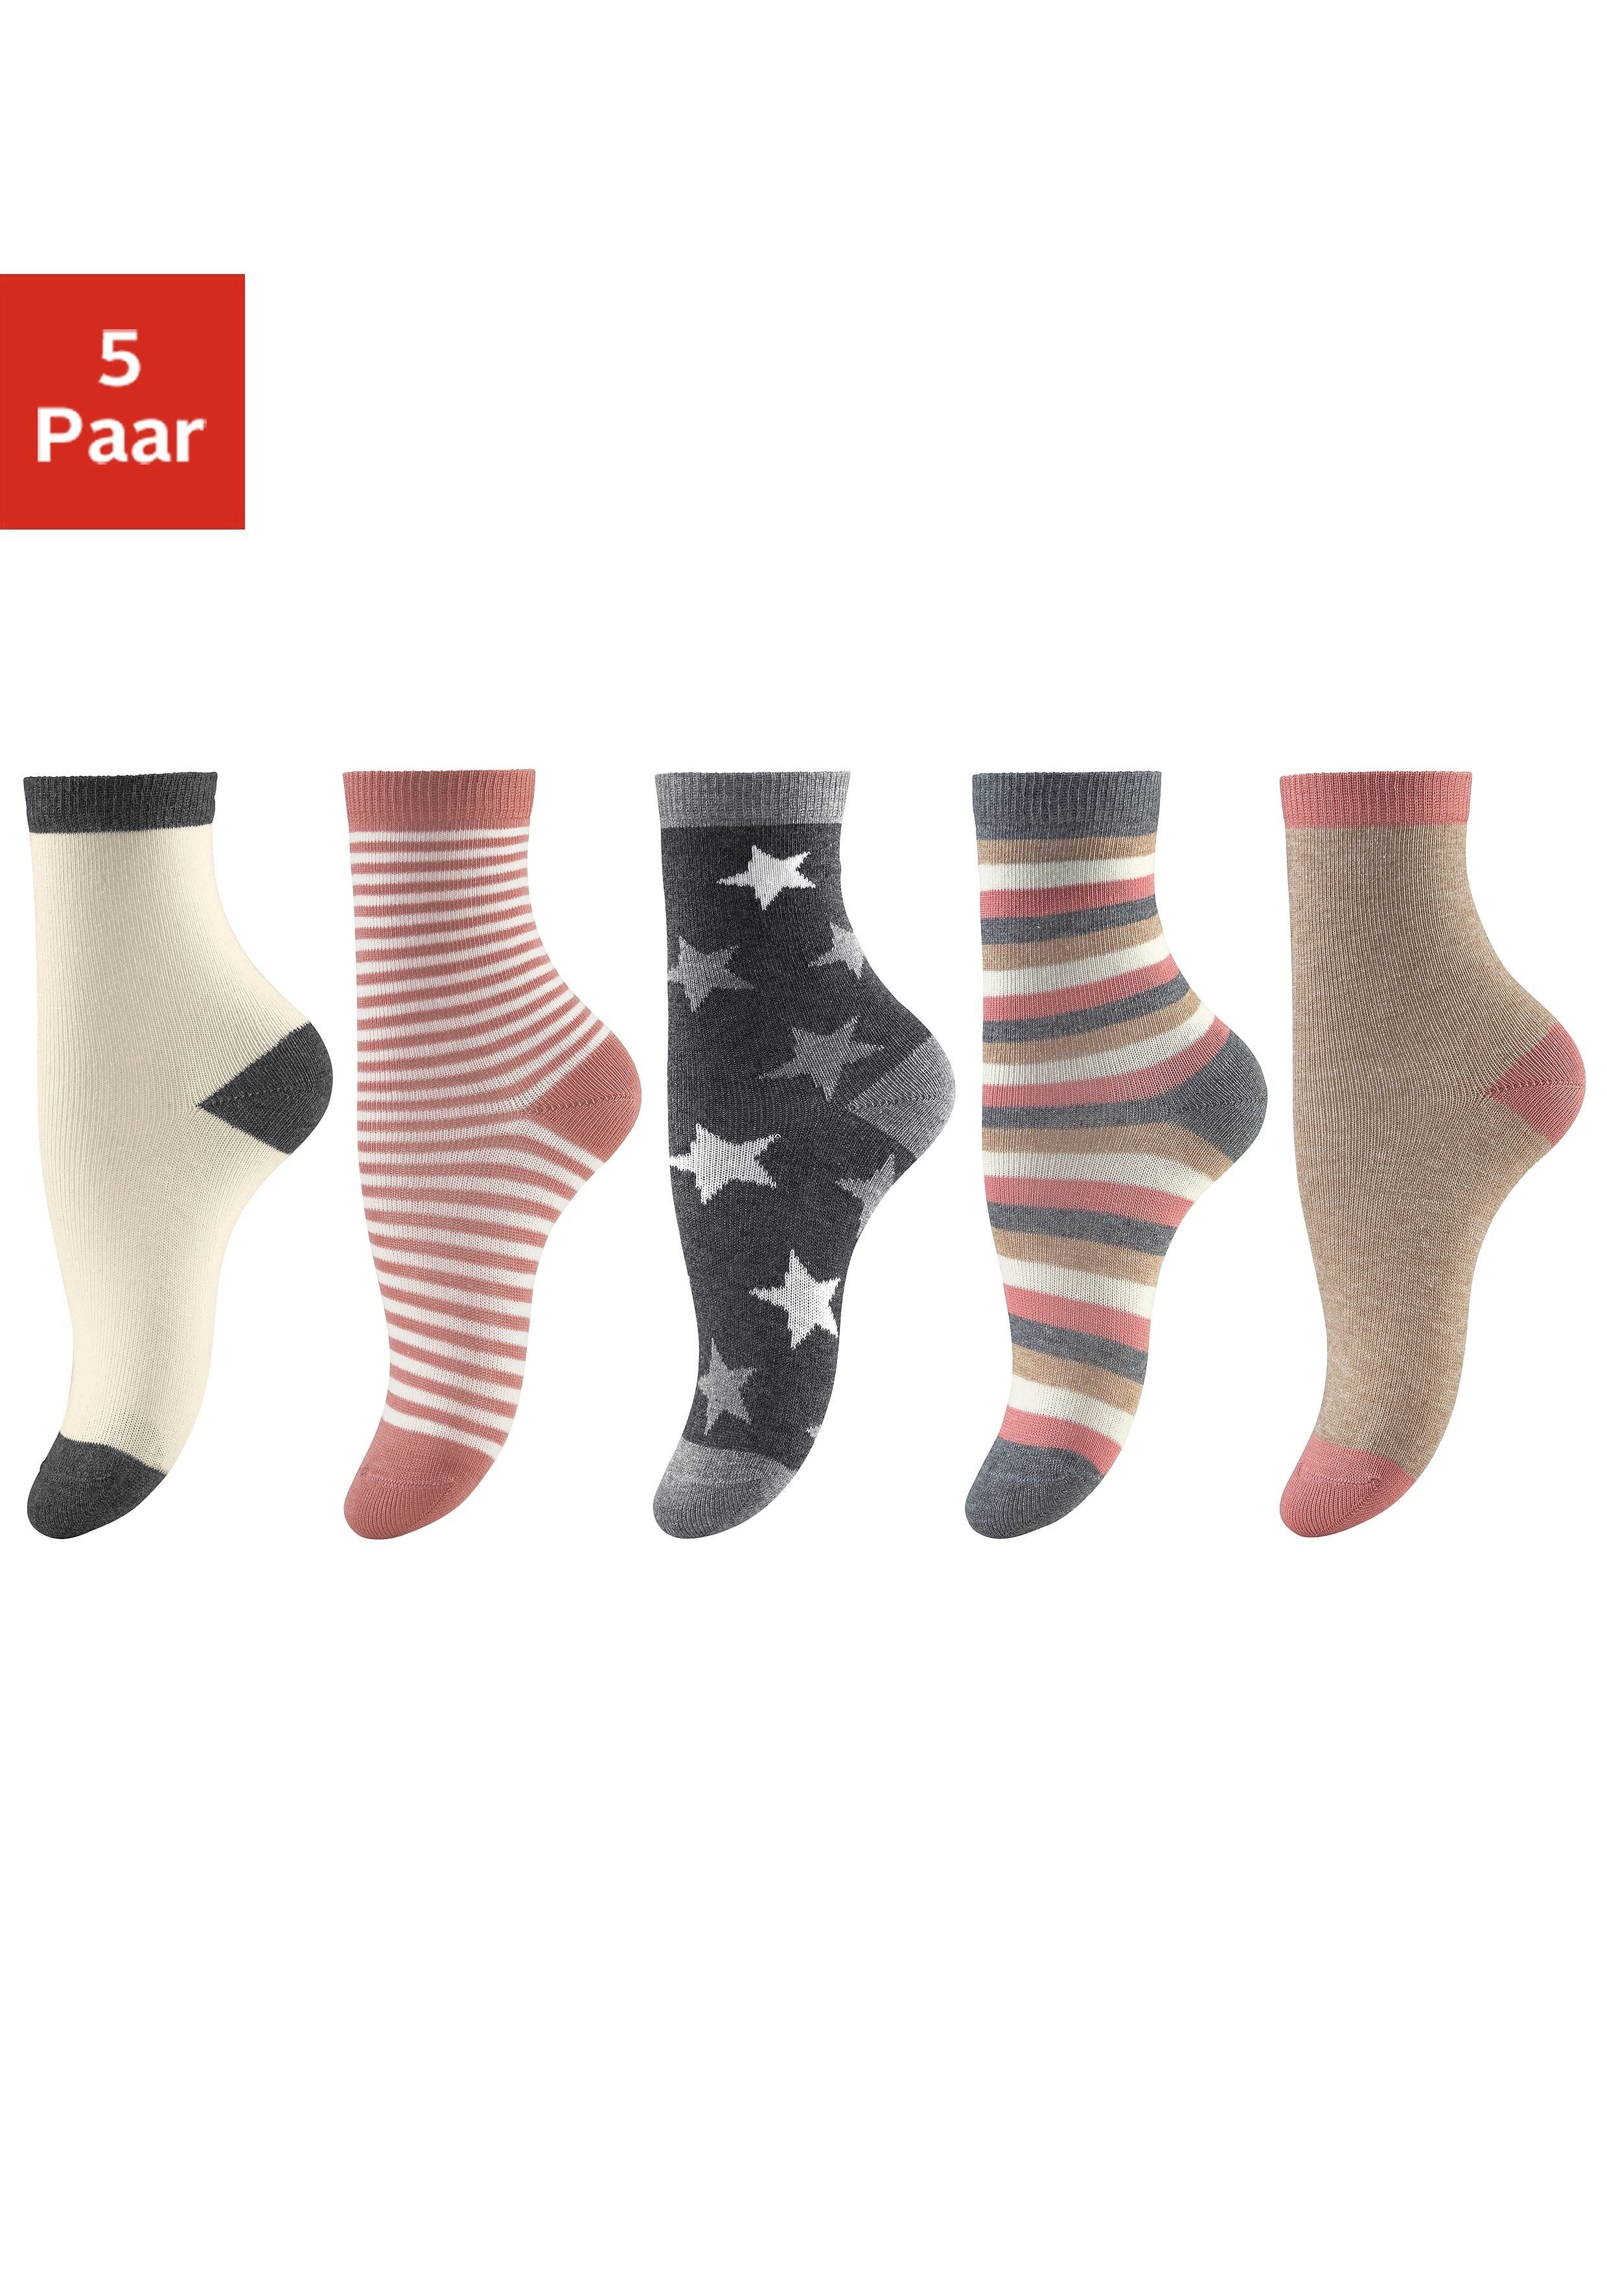 Socken (5-Paar) Designs 5 in verschiedenen